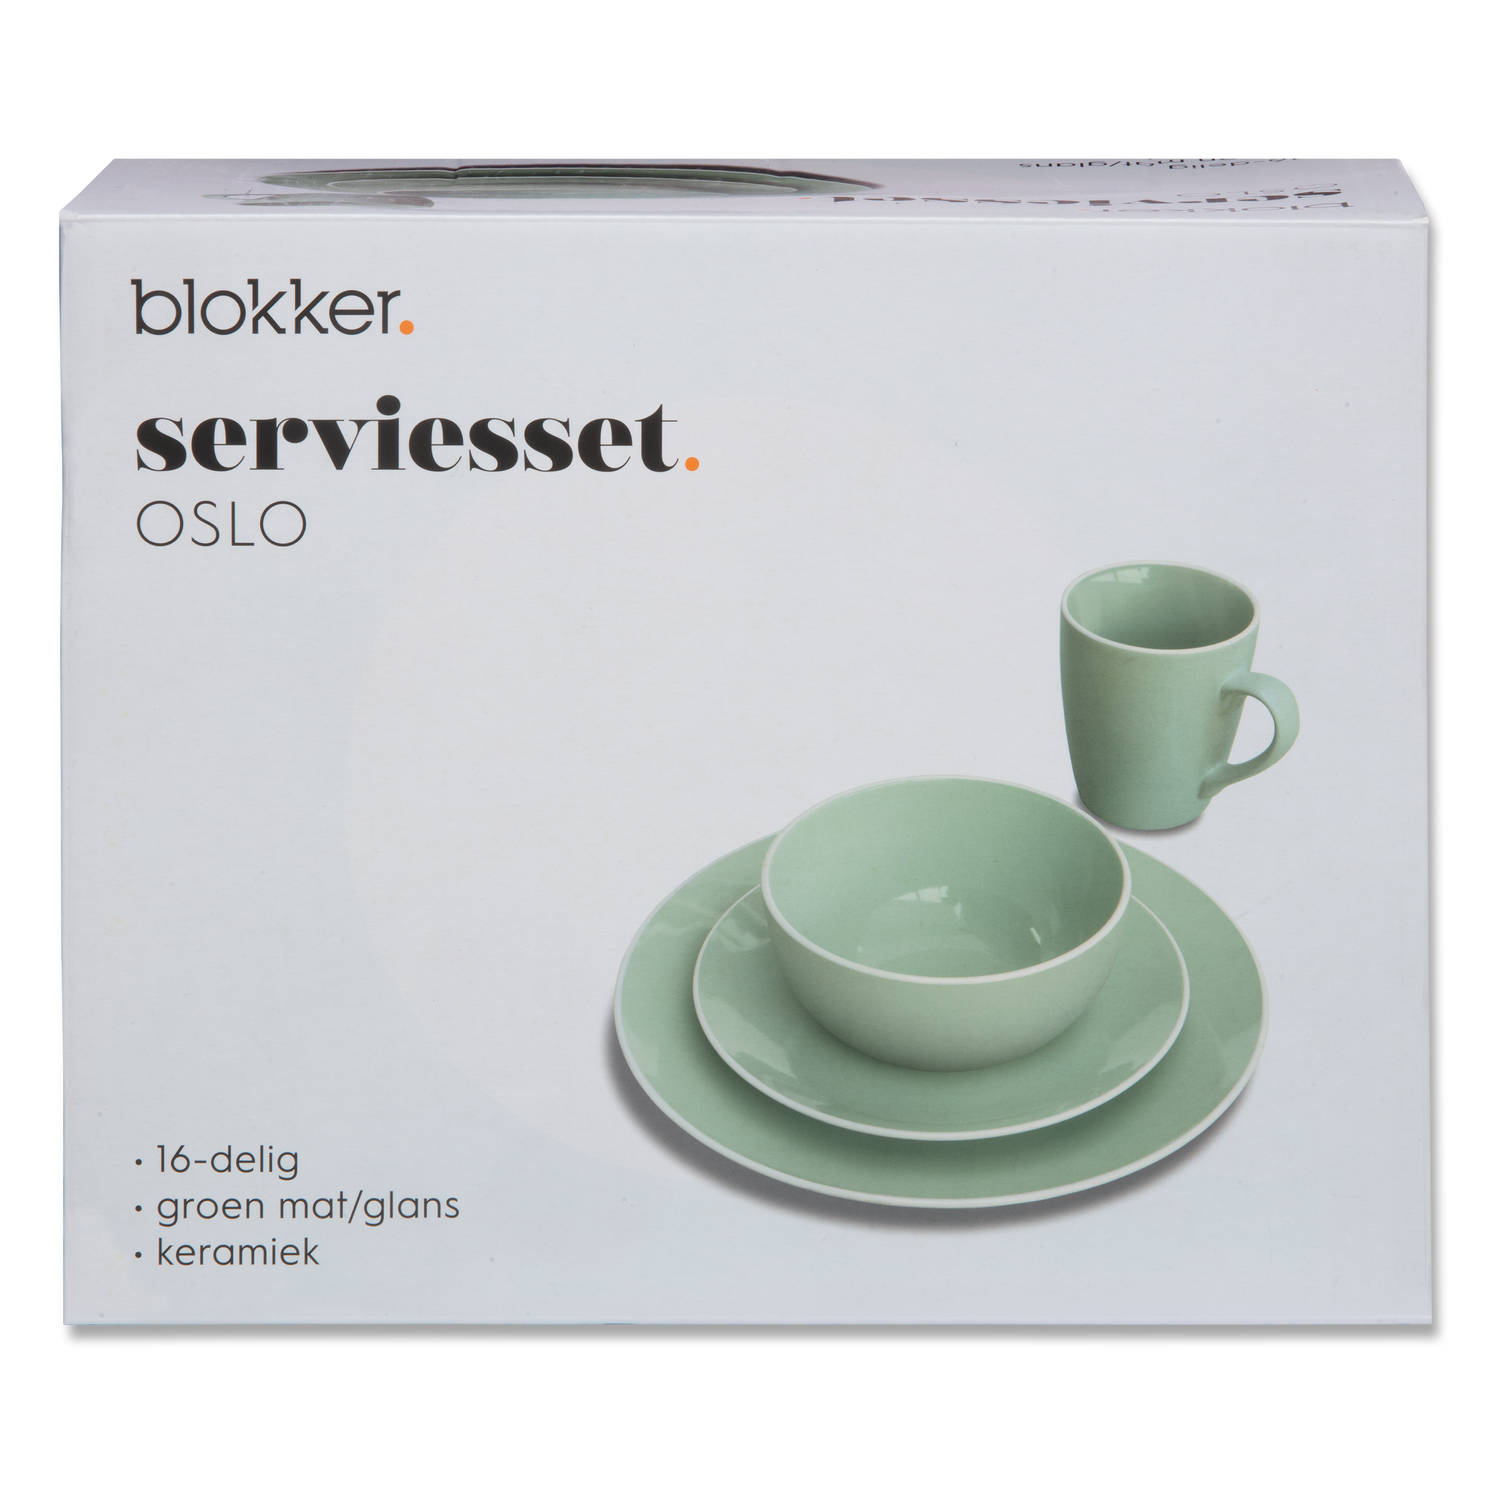 Blokker Oslo serviesset 16-delig | Blokker